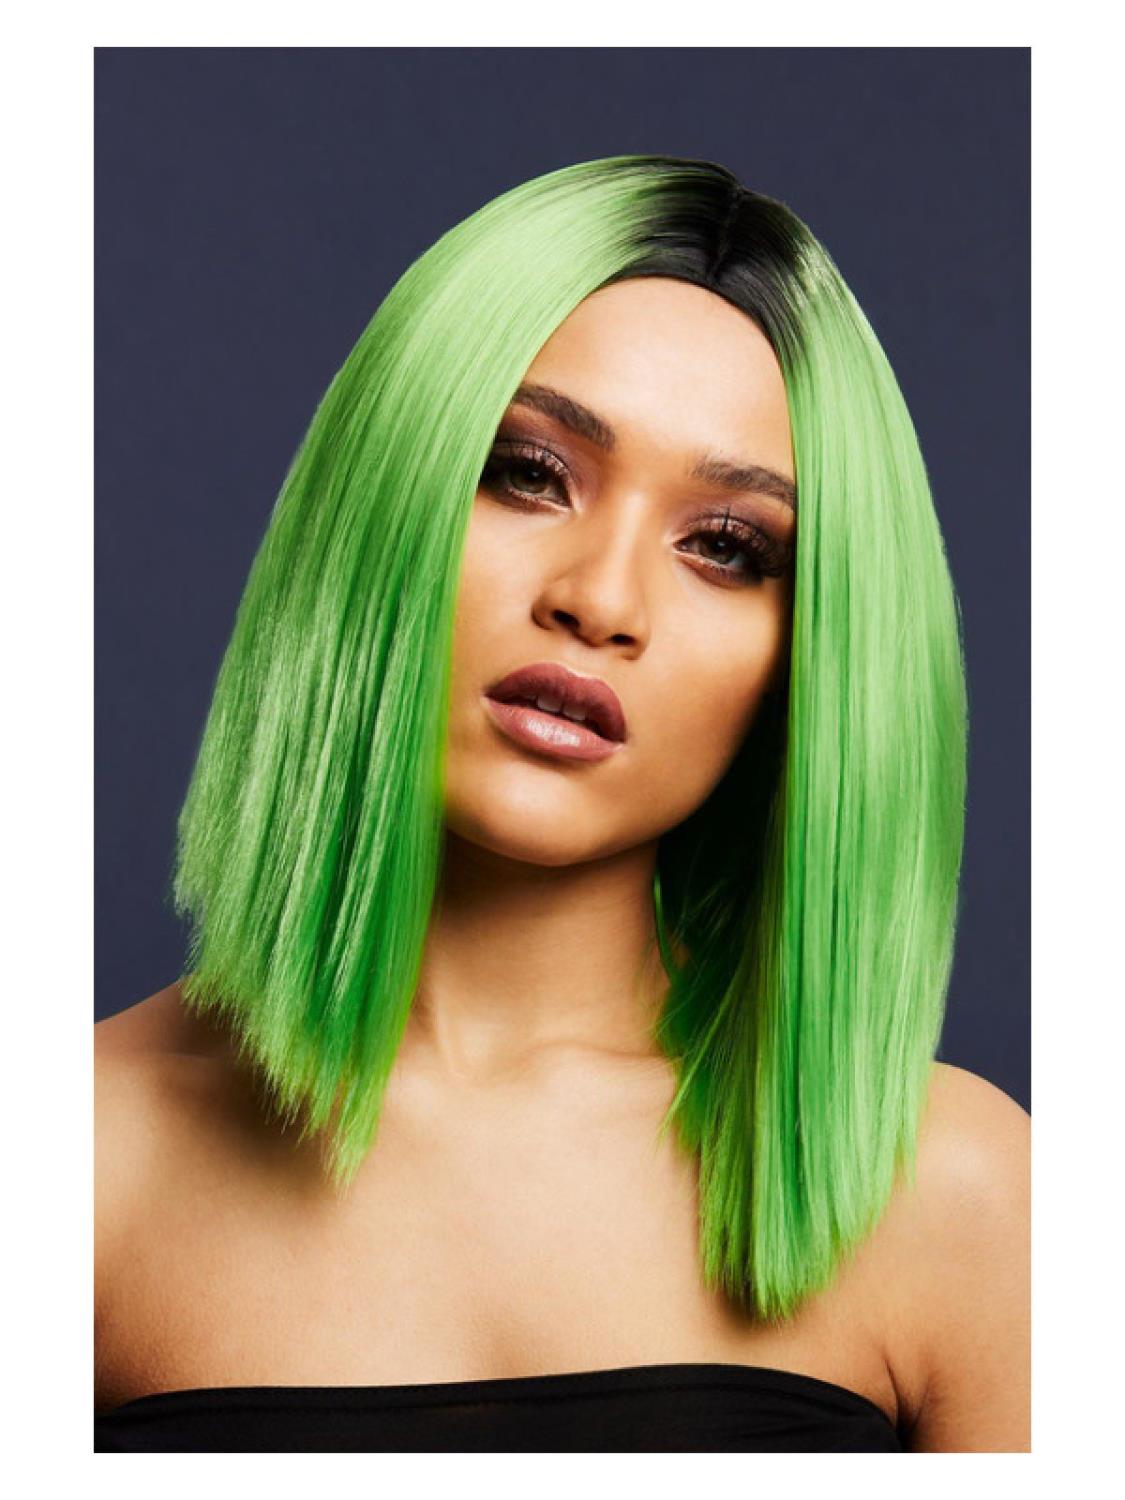 Kylie parykk grønn